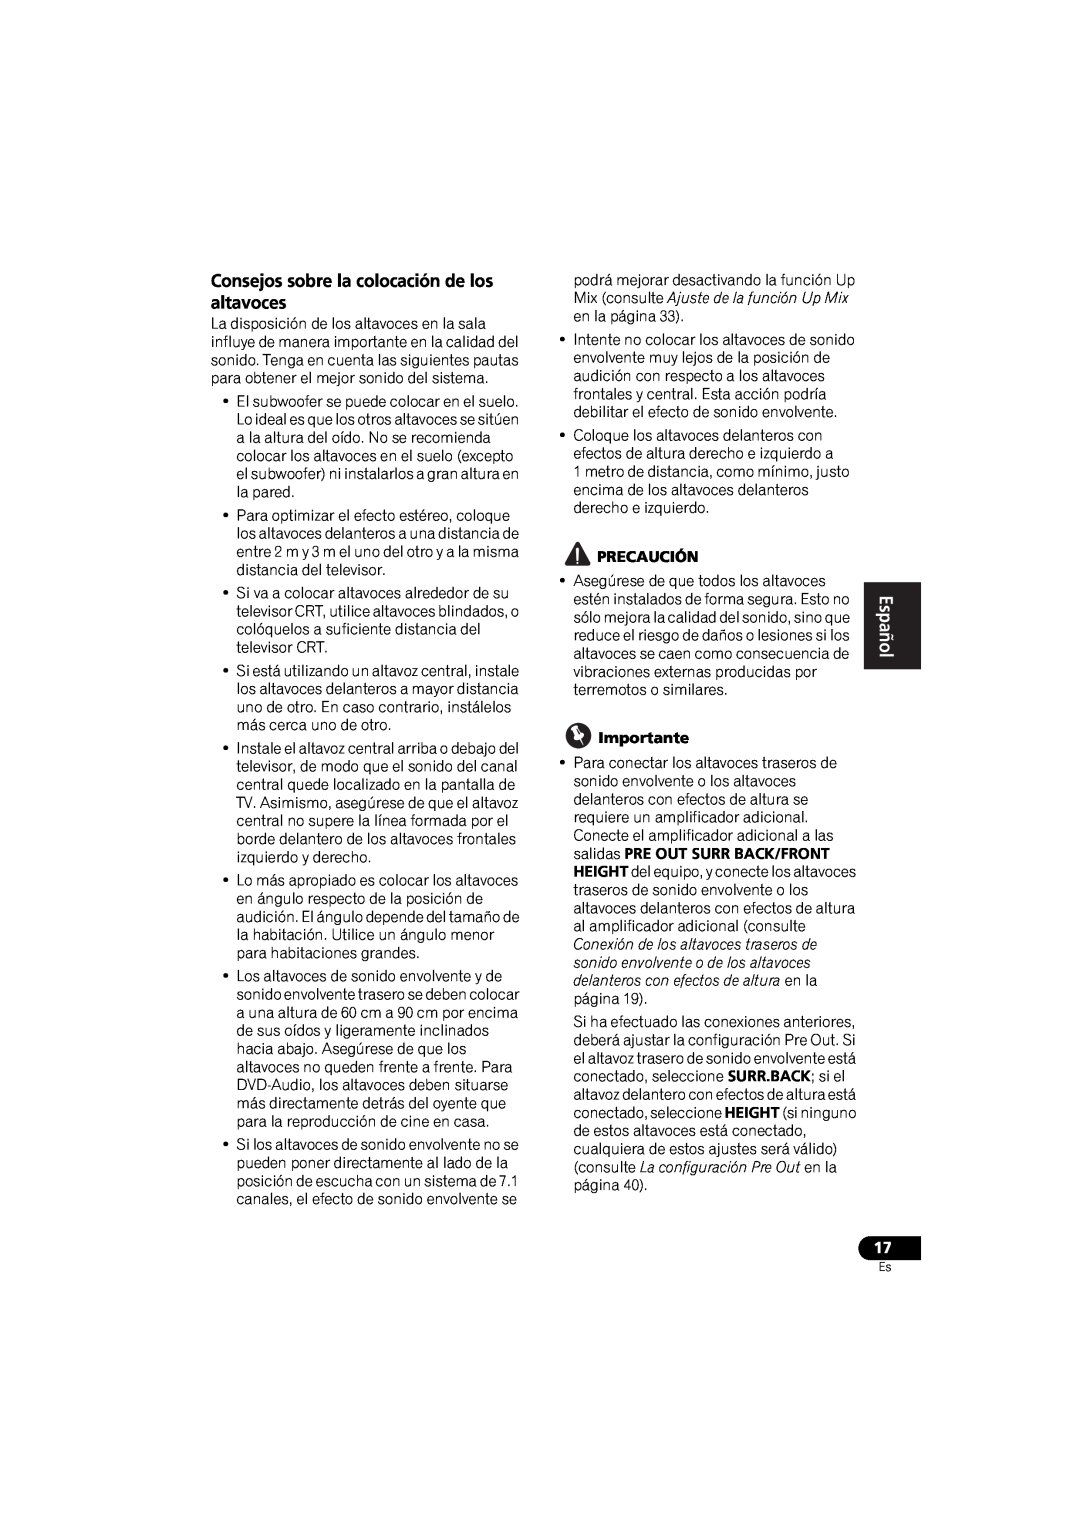 Pioneer VSX-520 manual Consejos sobre la colocación de los altavoces, Precaución, Importante 